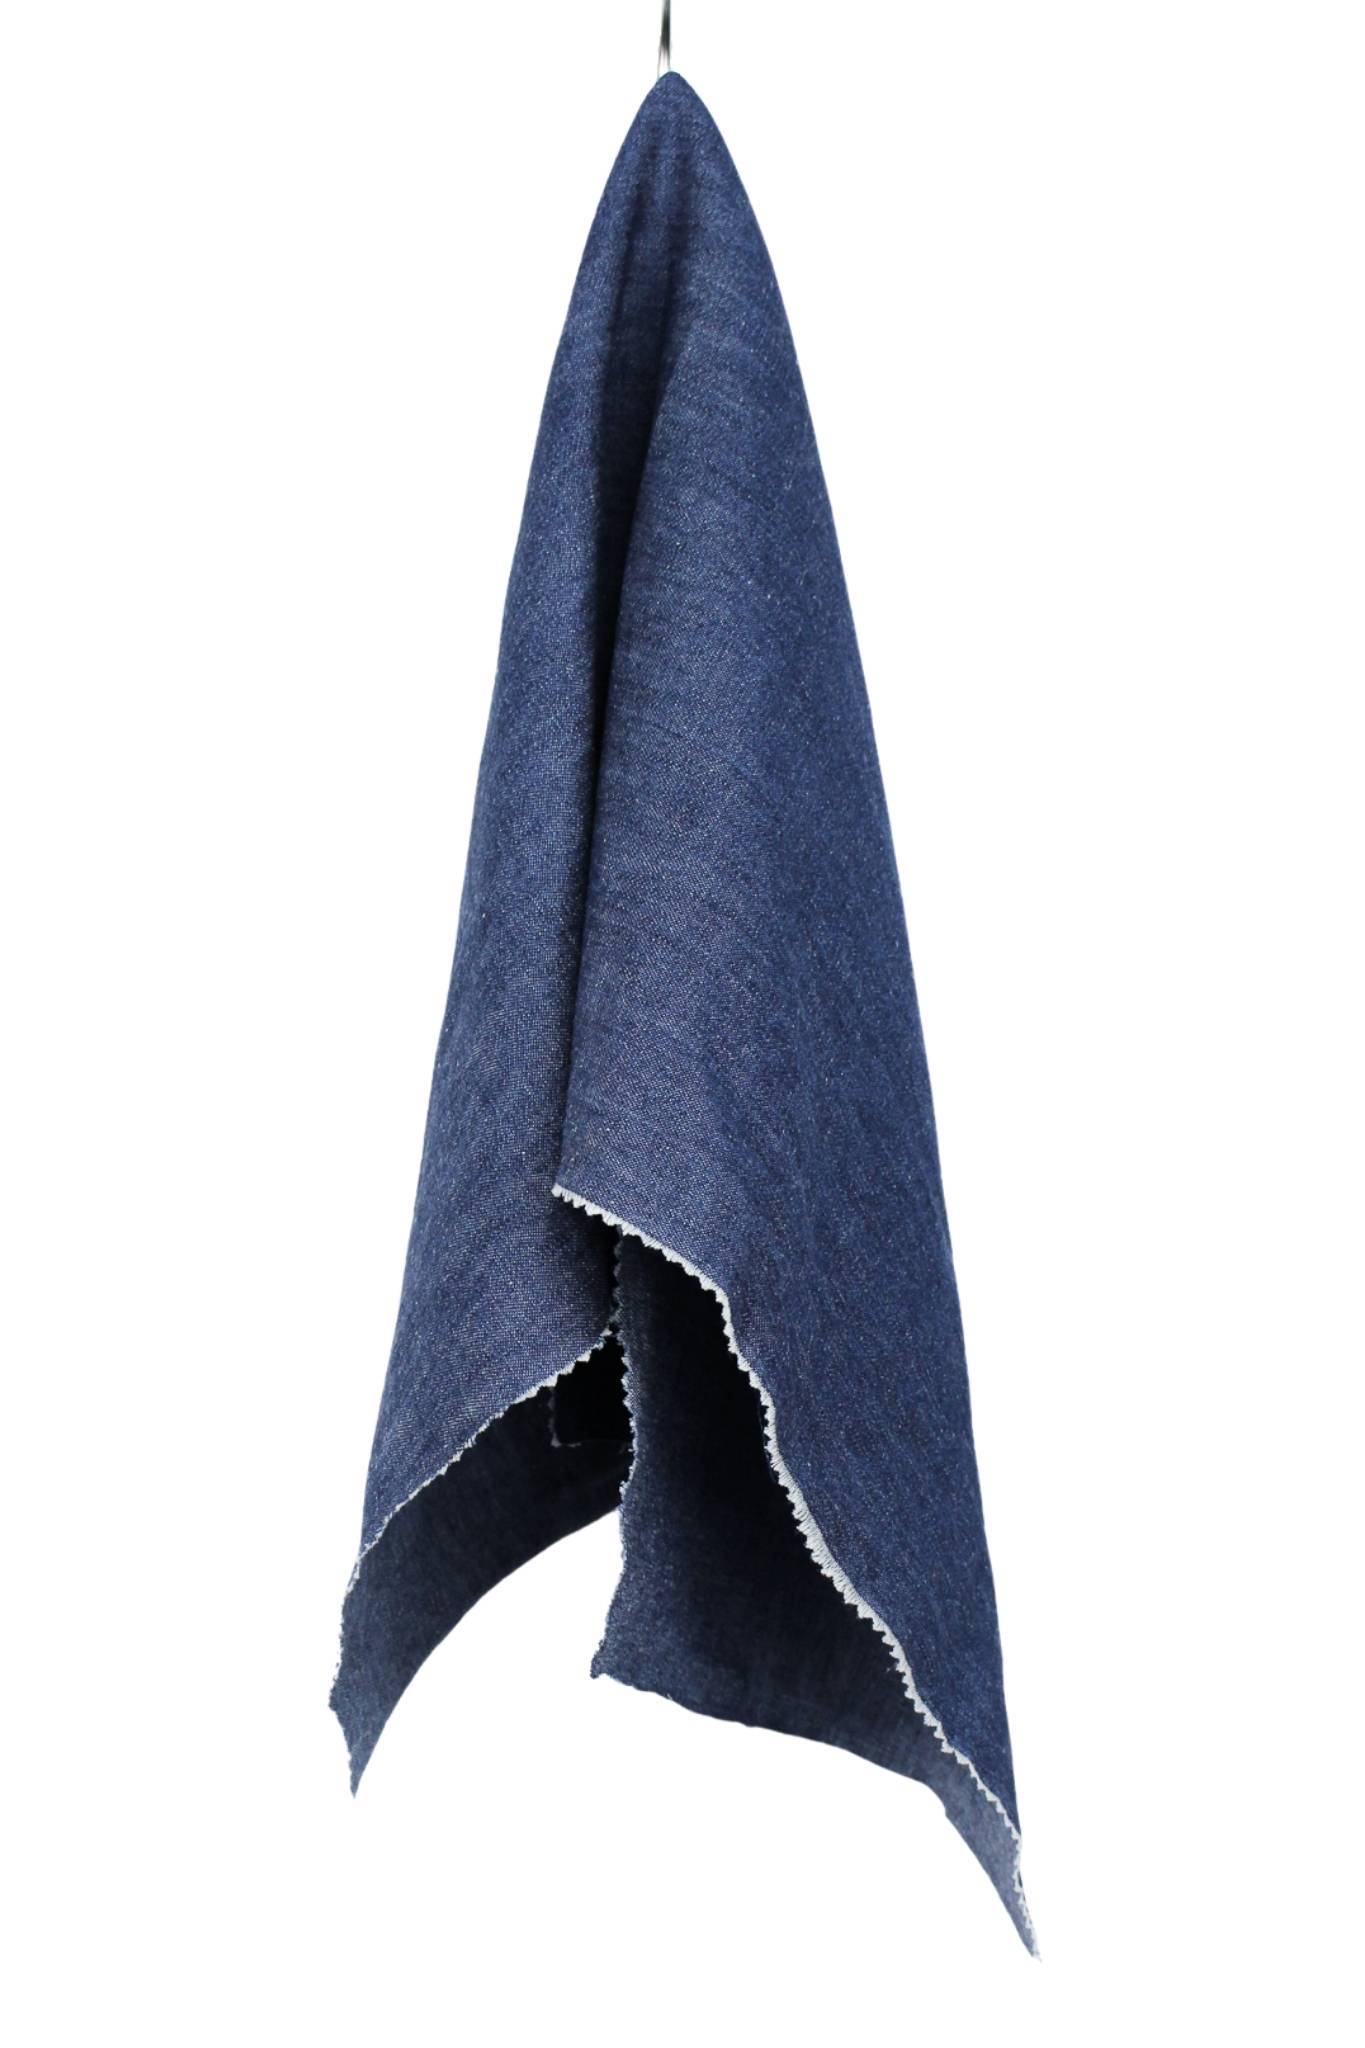 Superior Quality Plain Poly/Cotton Dress Fabric - Denim Blue